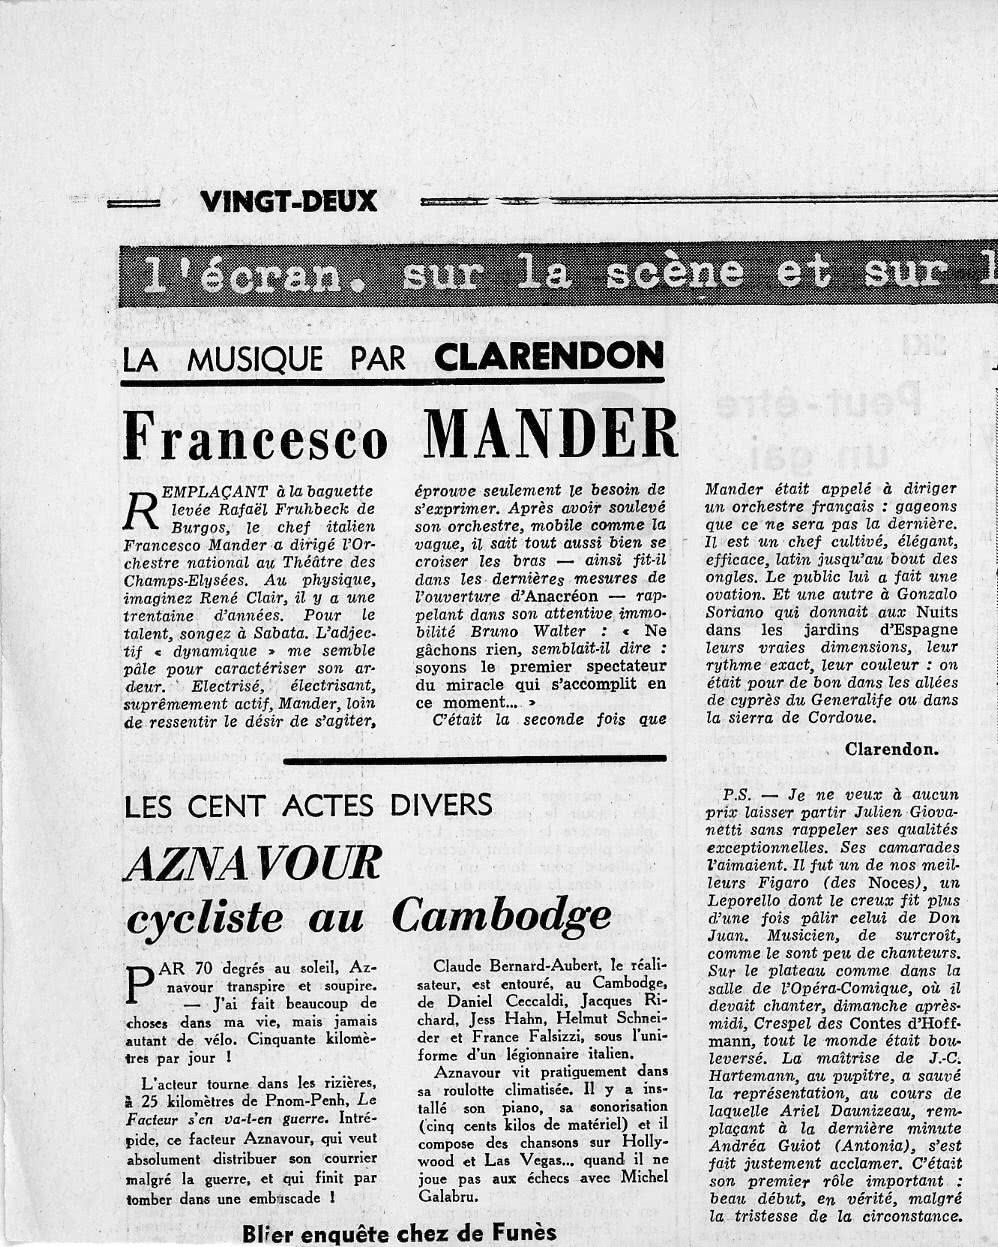 Ariel Daunizeau - Les Contes d'Hoffmann Le Figaro 3 février 1966